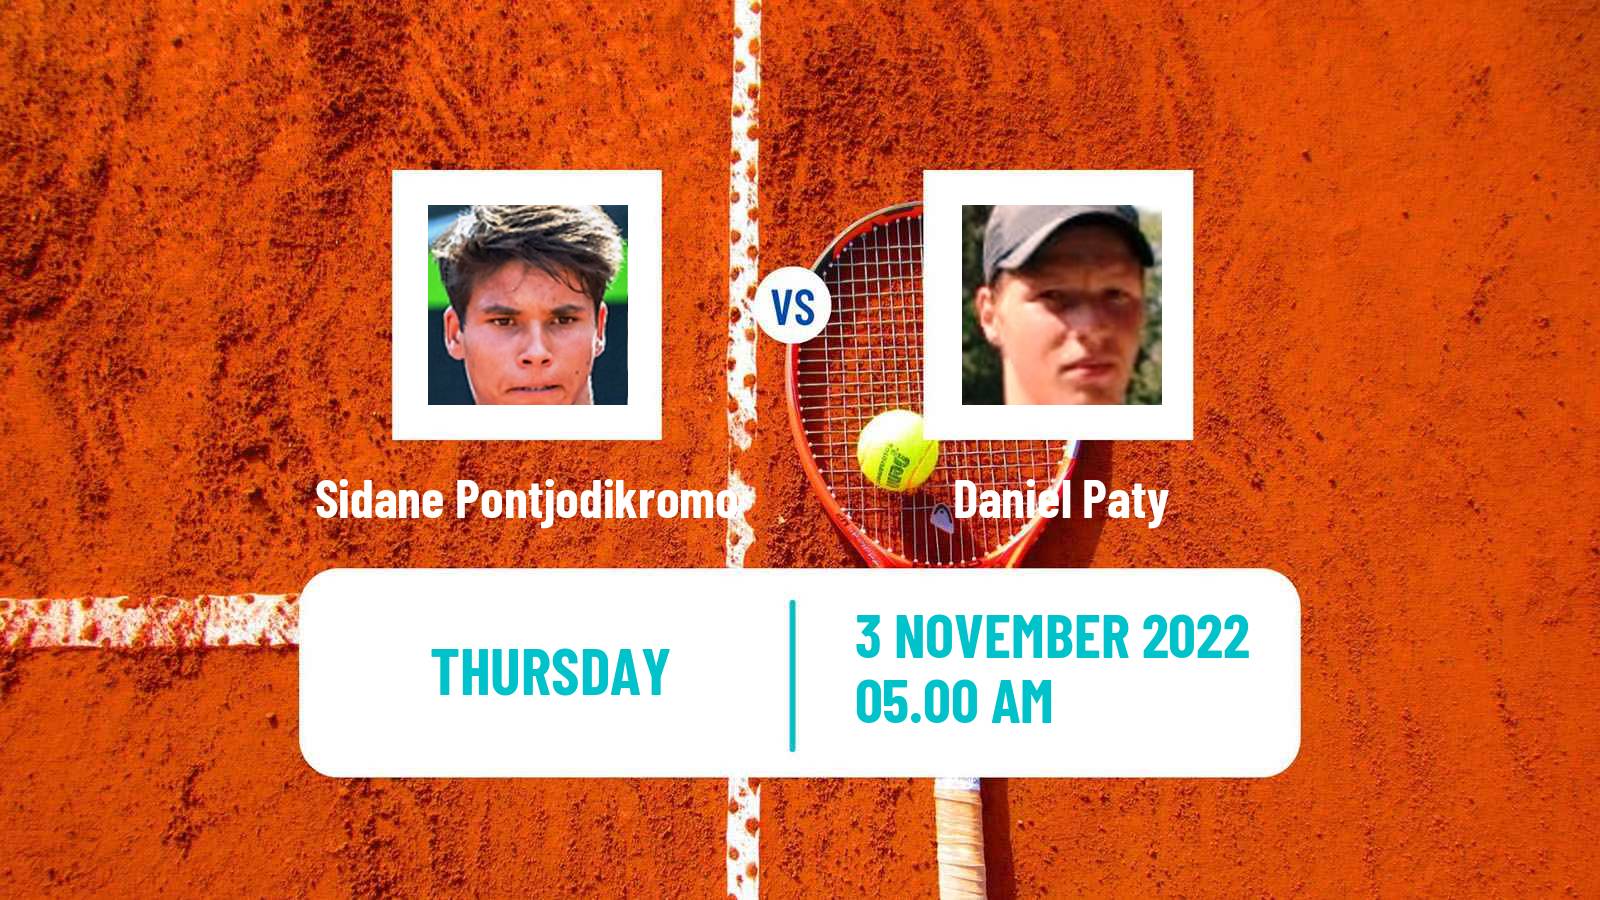 Tennis ITF Tournaments Sidane Pontjodikromo - Daniel Paty